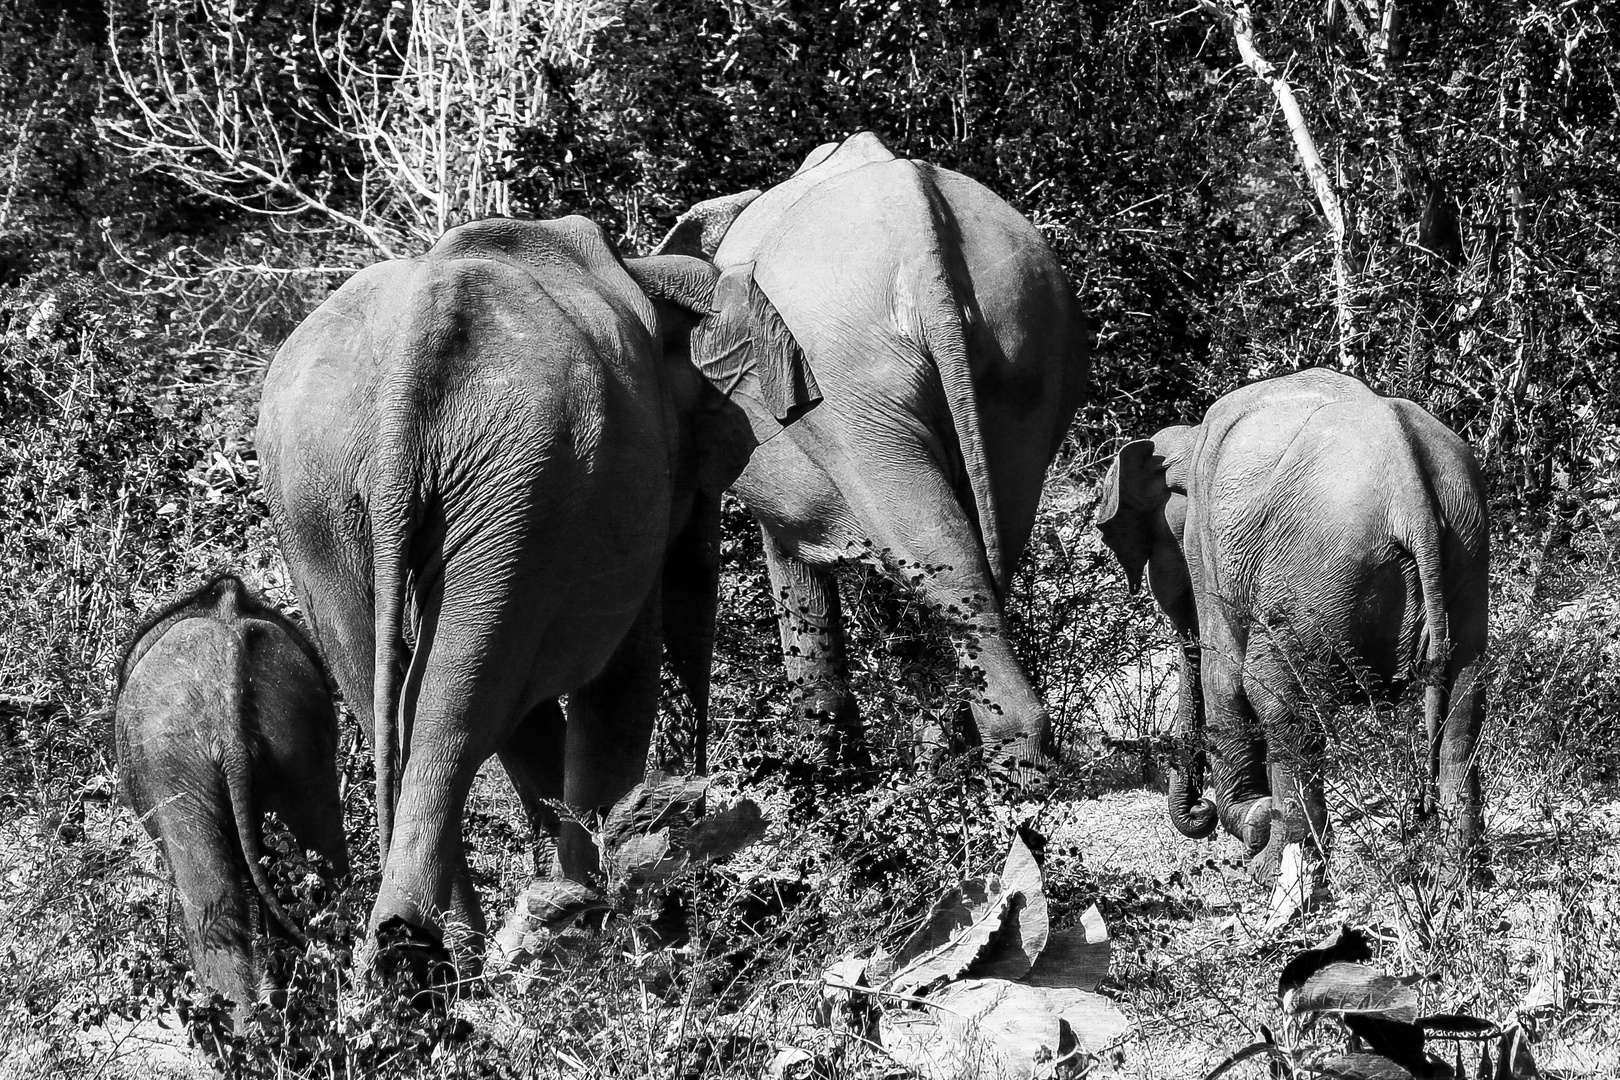 elefants of sri lanka: family running